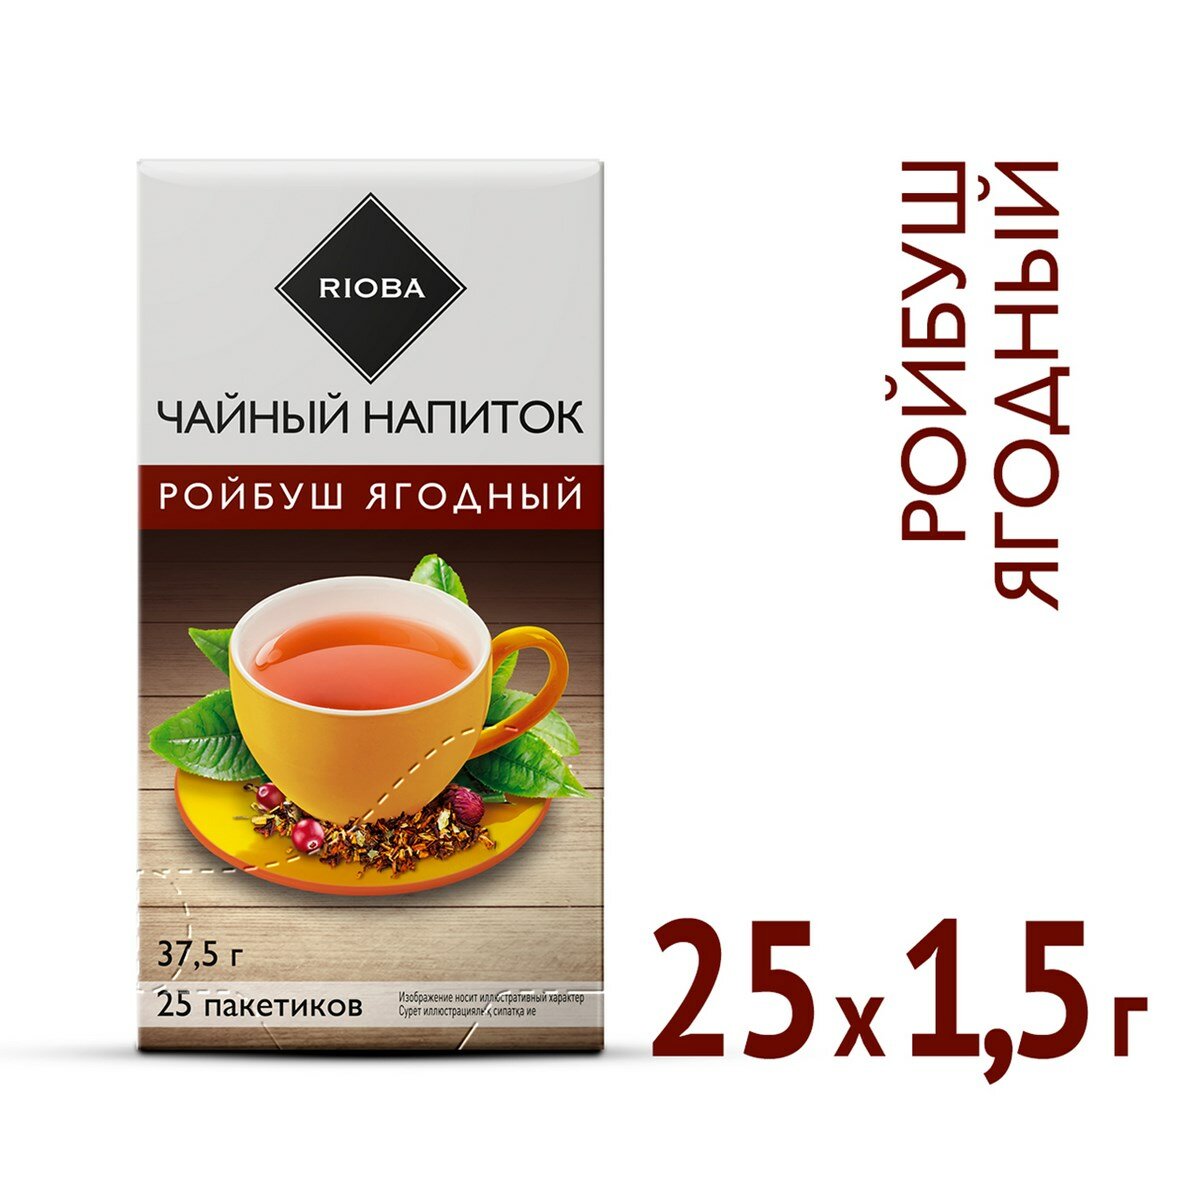 Чайный напиток RIOBA Ройбуш ягодный, 1,5 г × 25 шт. - фотография № 1